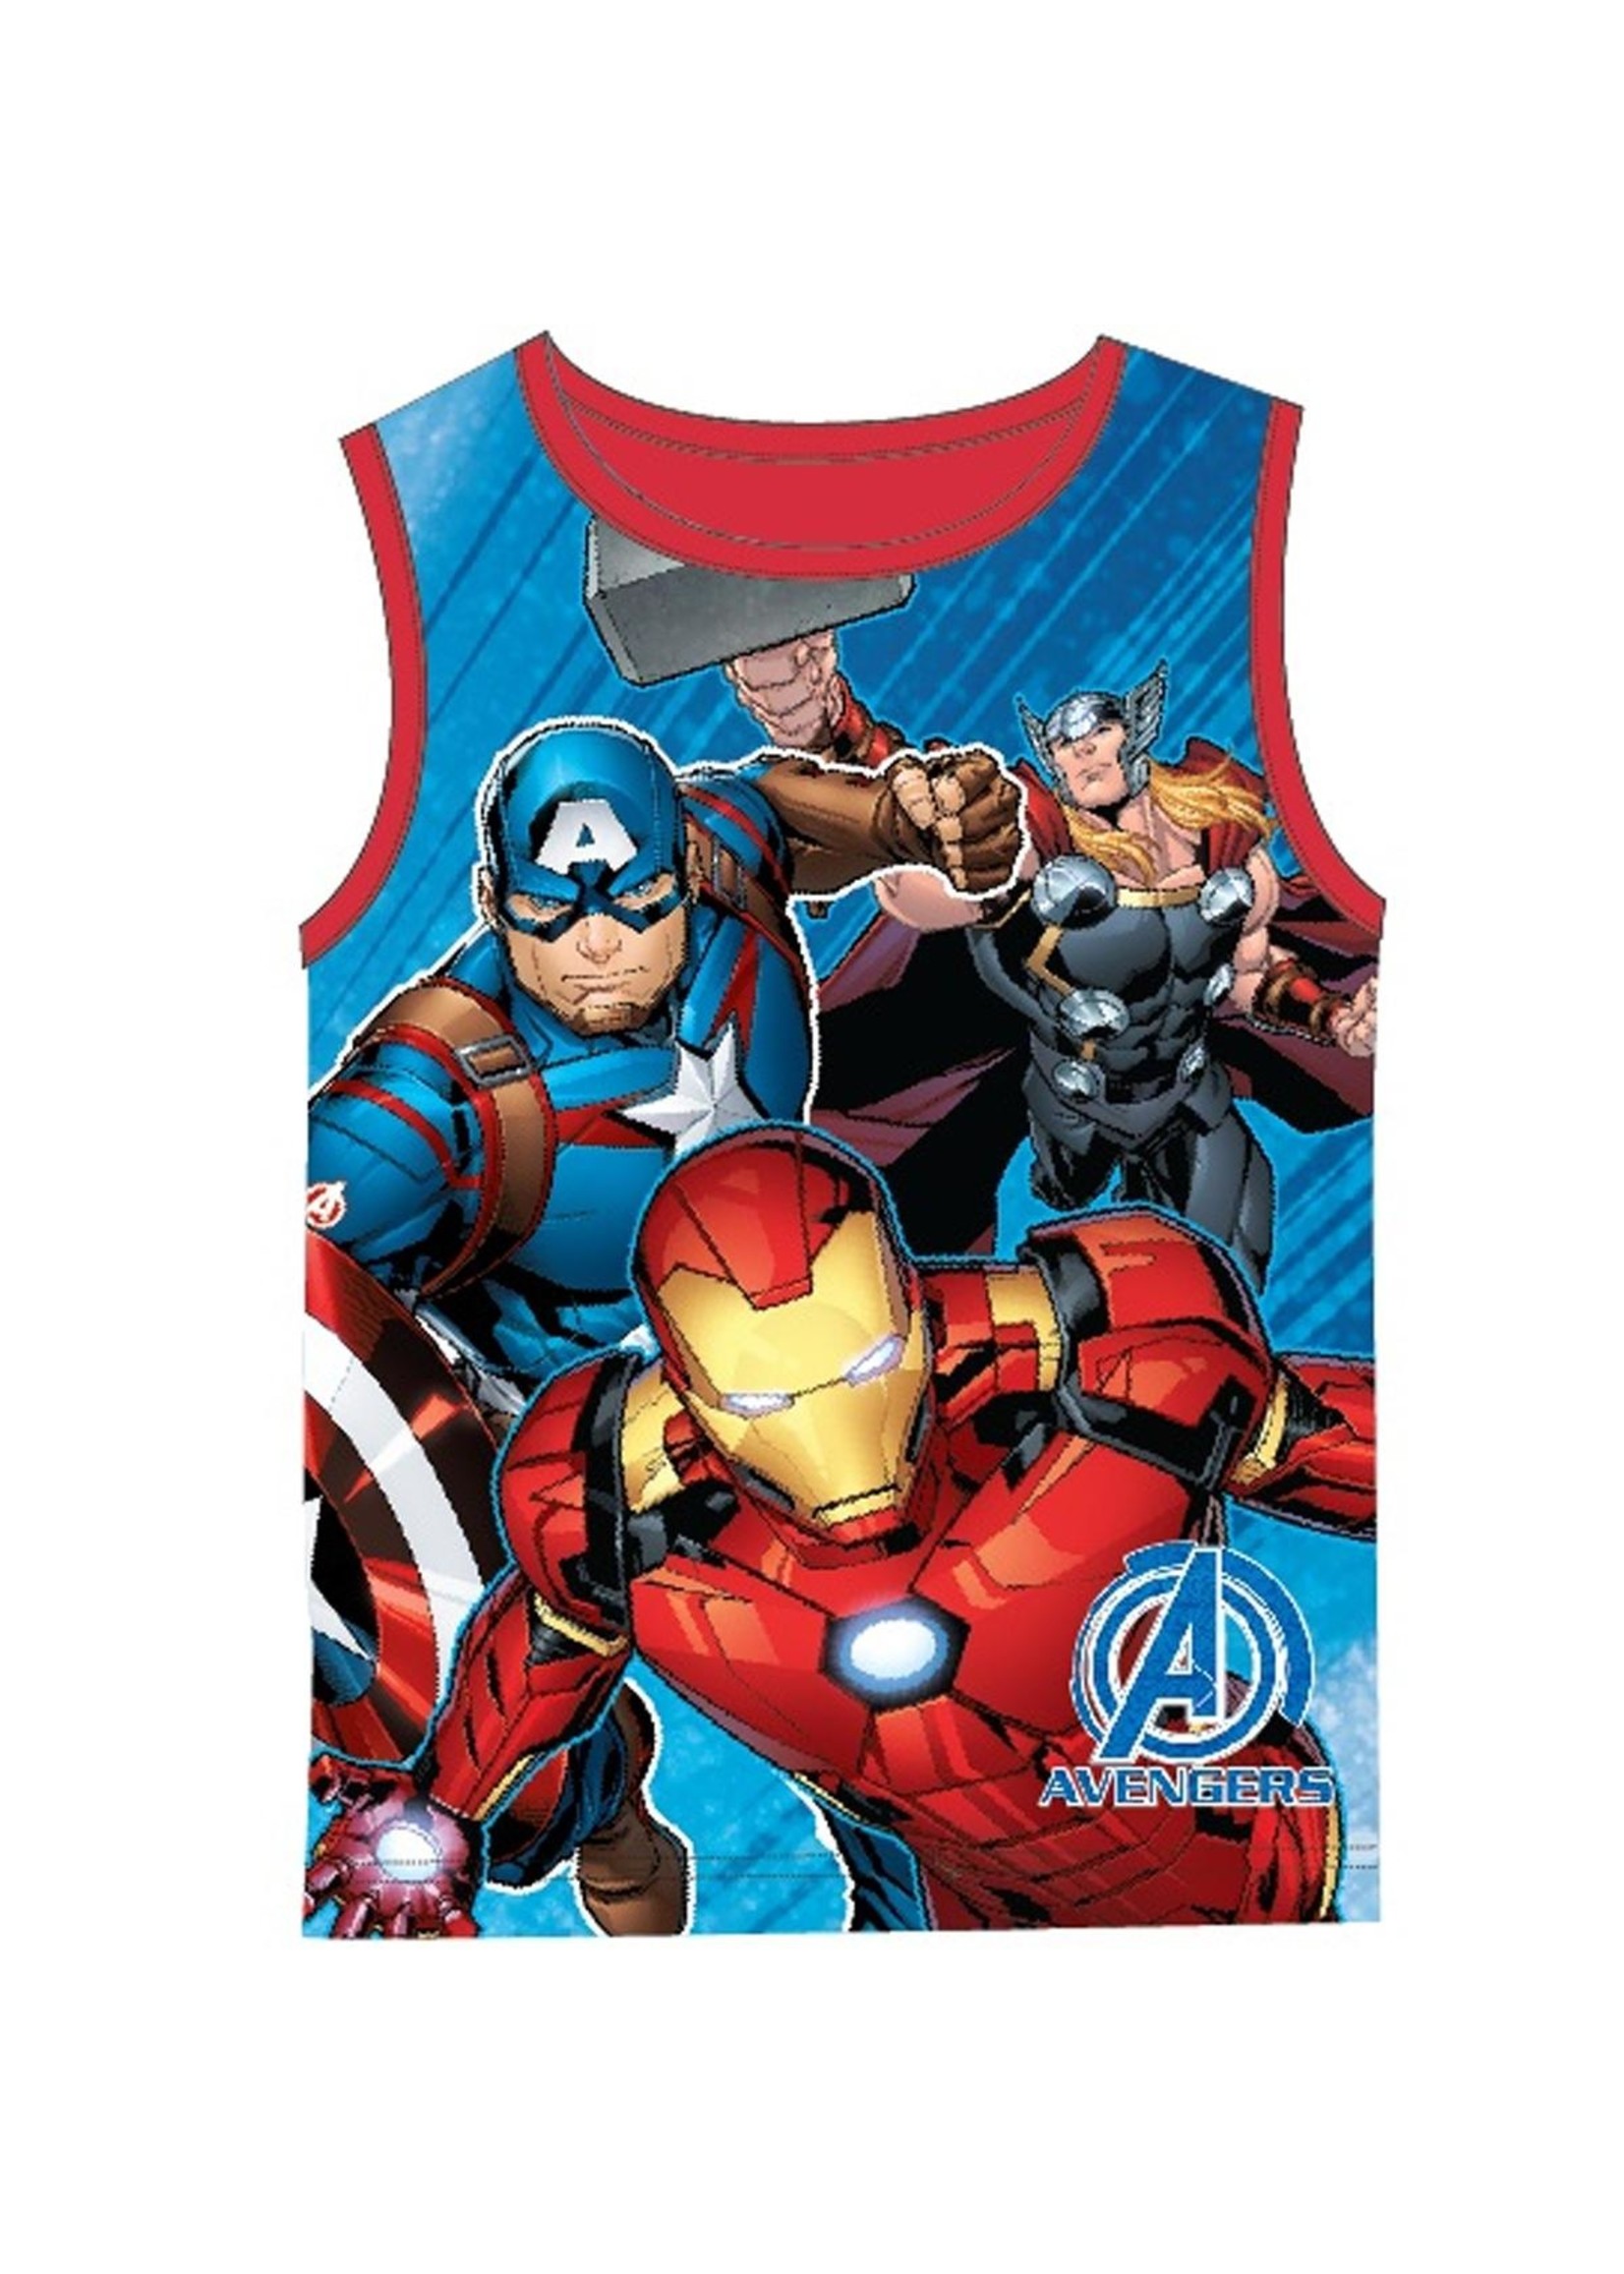 Marvel Avengers sleeveless shirt from Marvel blue